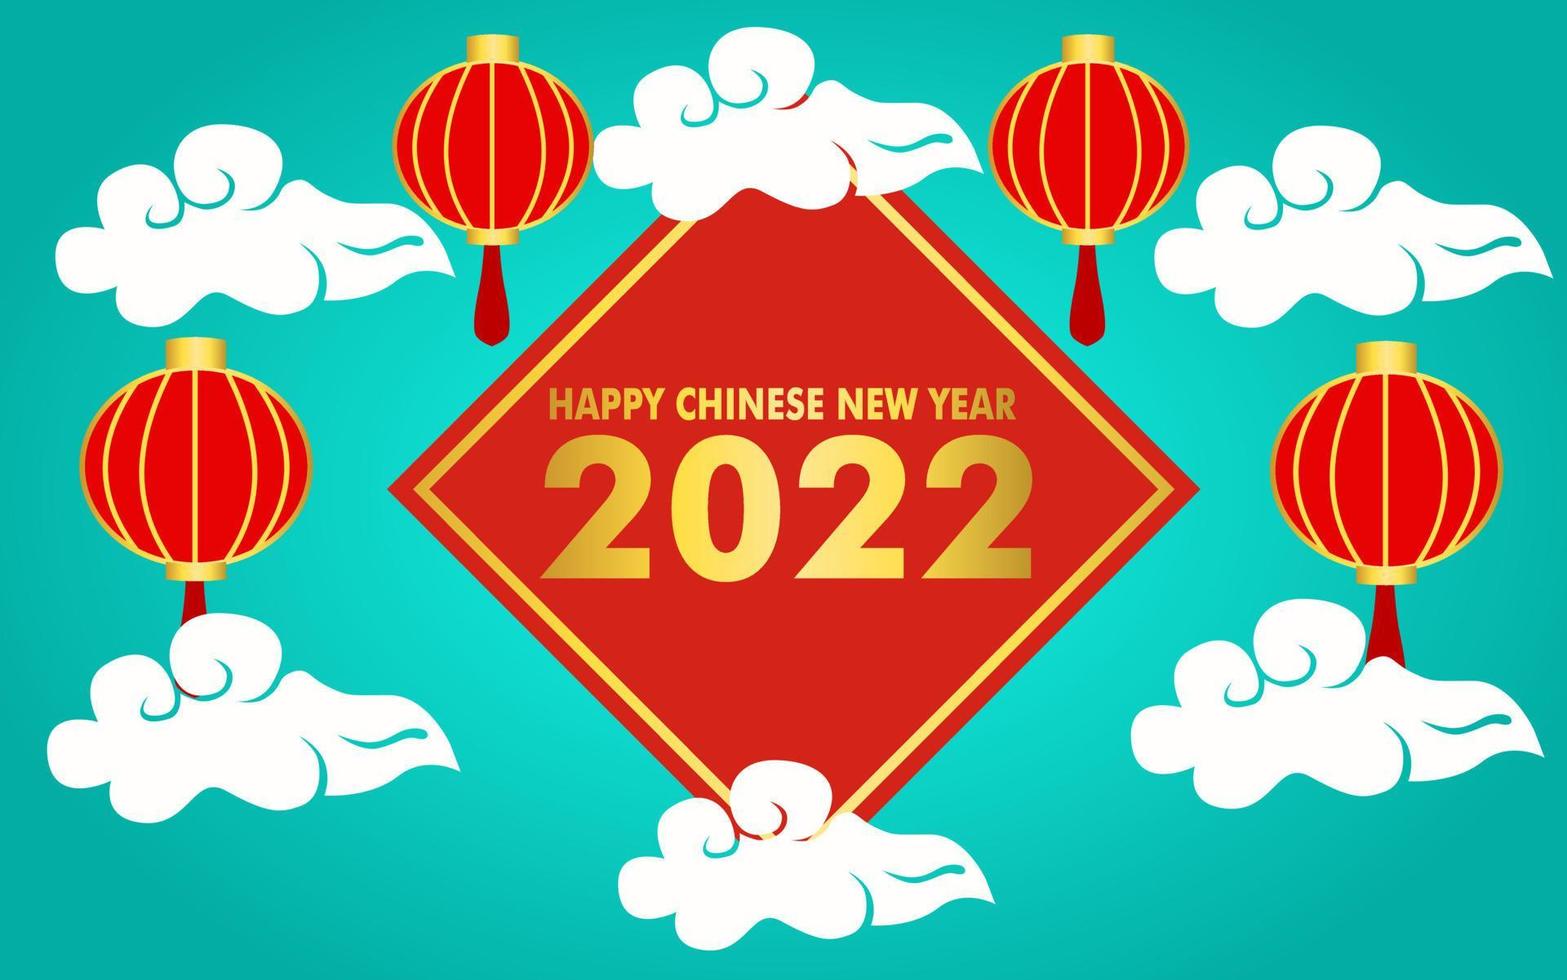 Khám phá các hình ảnh đầy tượng trưng và ý nghĩa về năm mới Trung Quốc 2022 để cảm nhận được sự hồi sinh và tràn đầy hy vọng cho một năm mới tốt đẹp hơn.